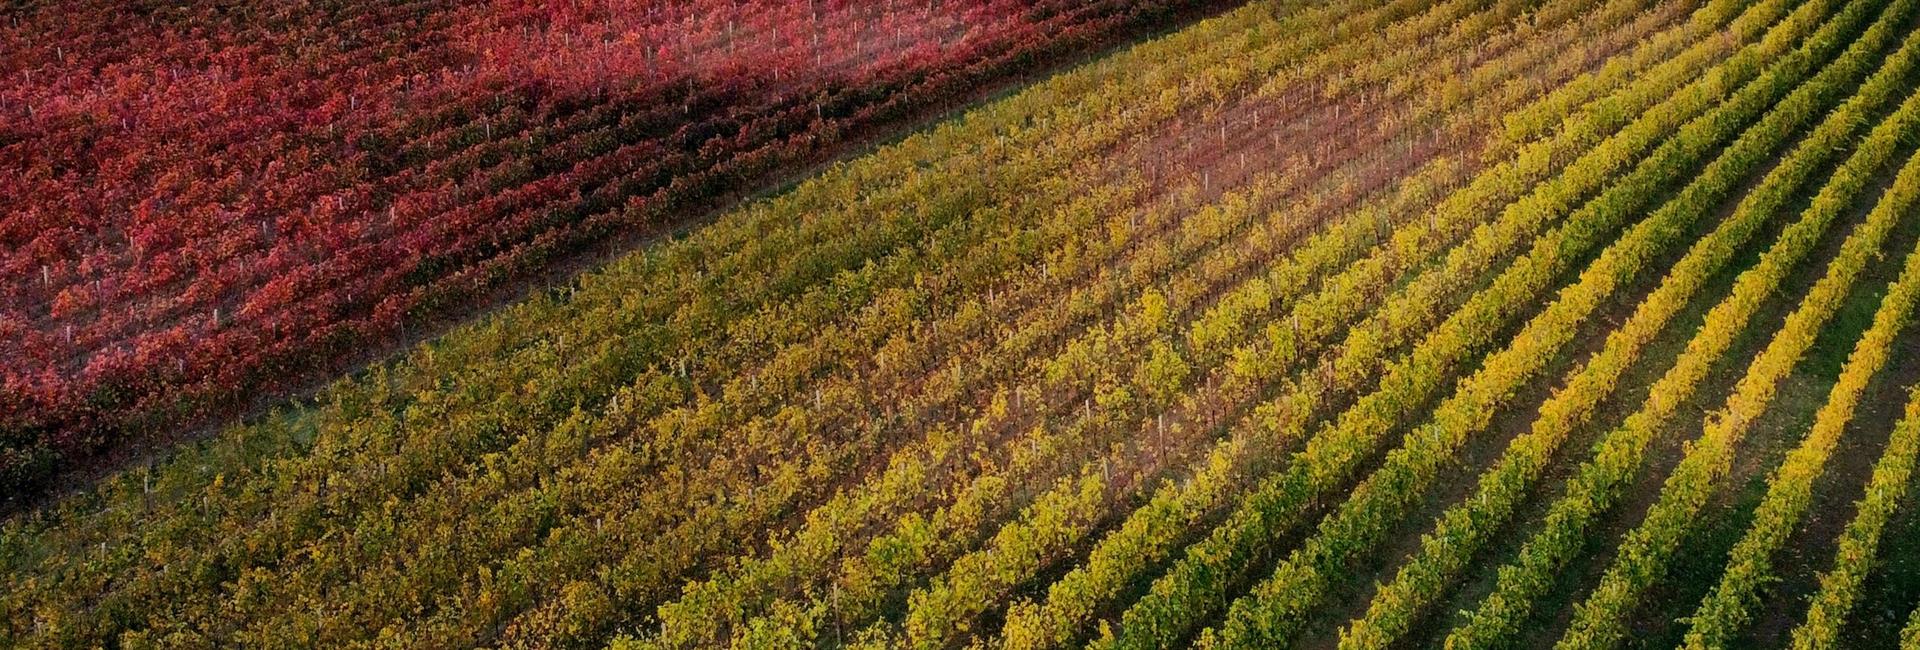 Jesen v vinogradu